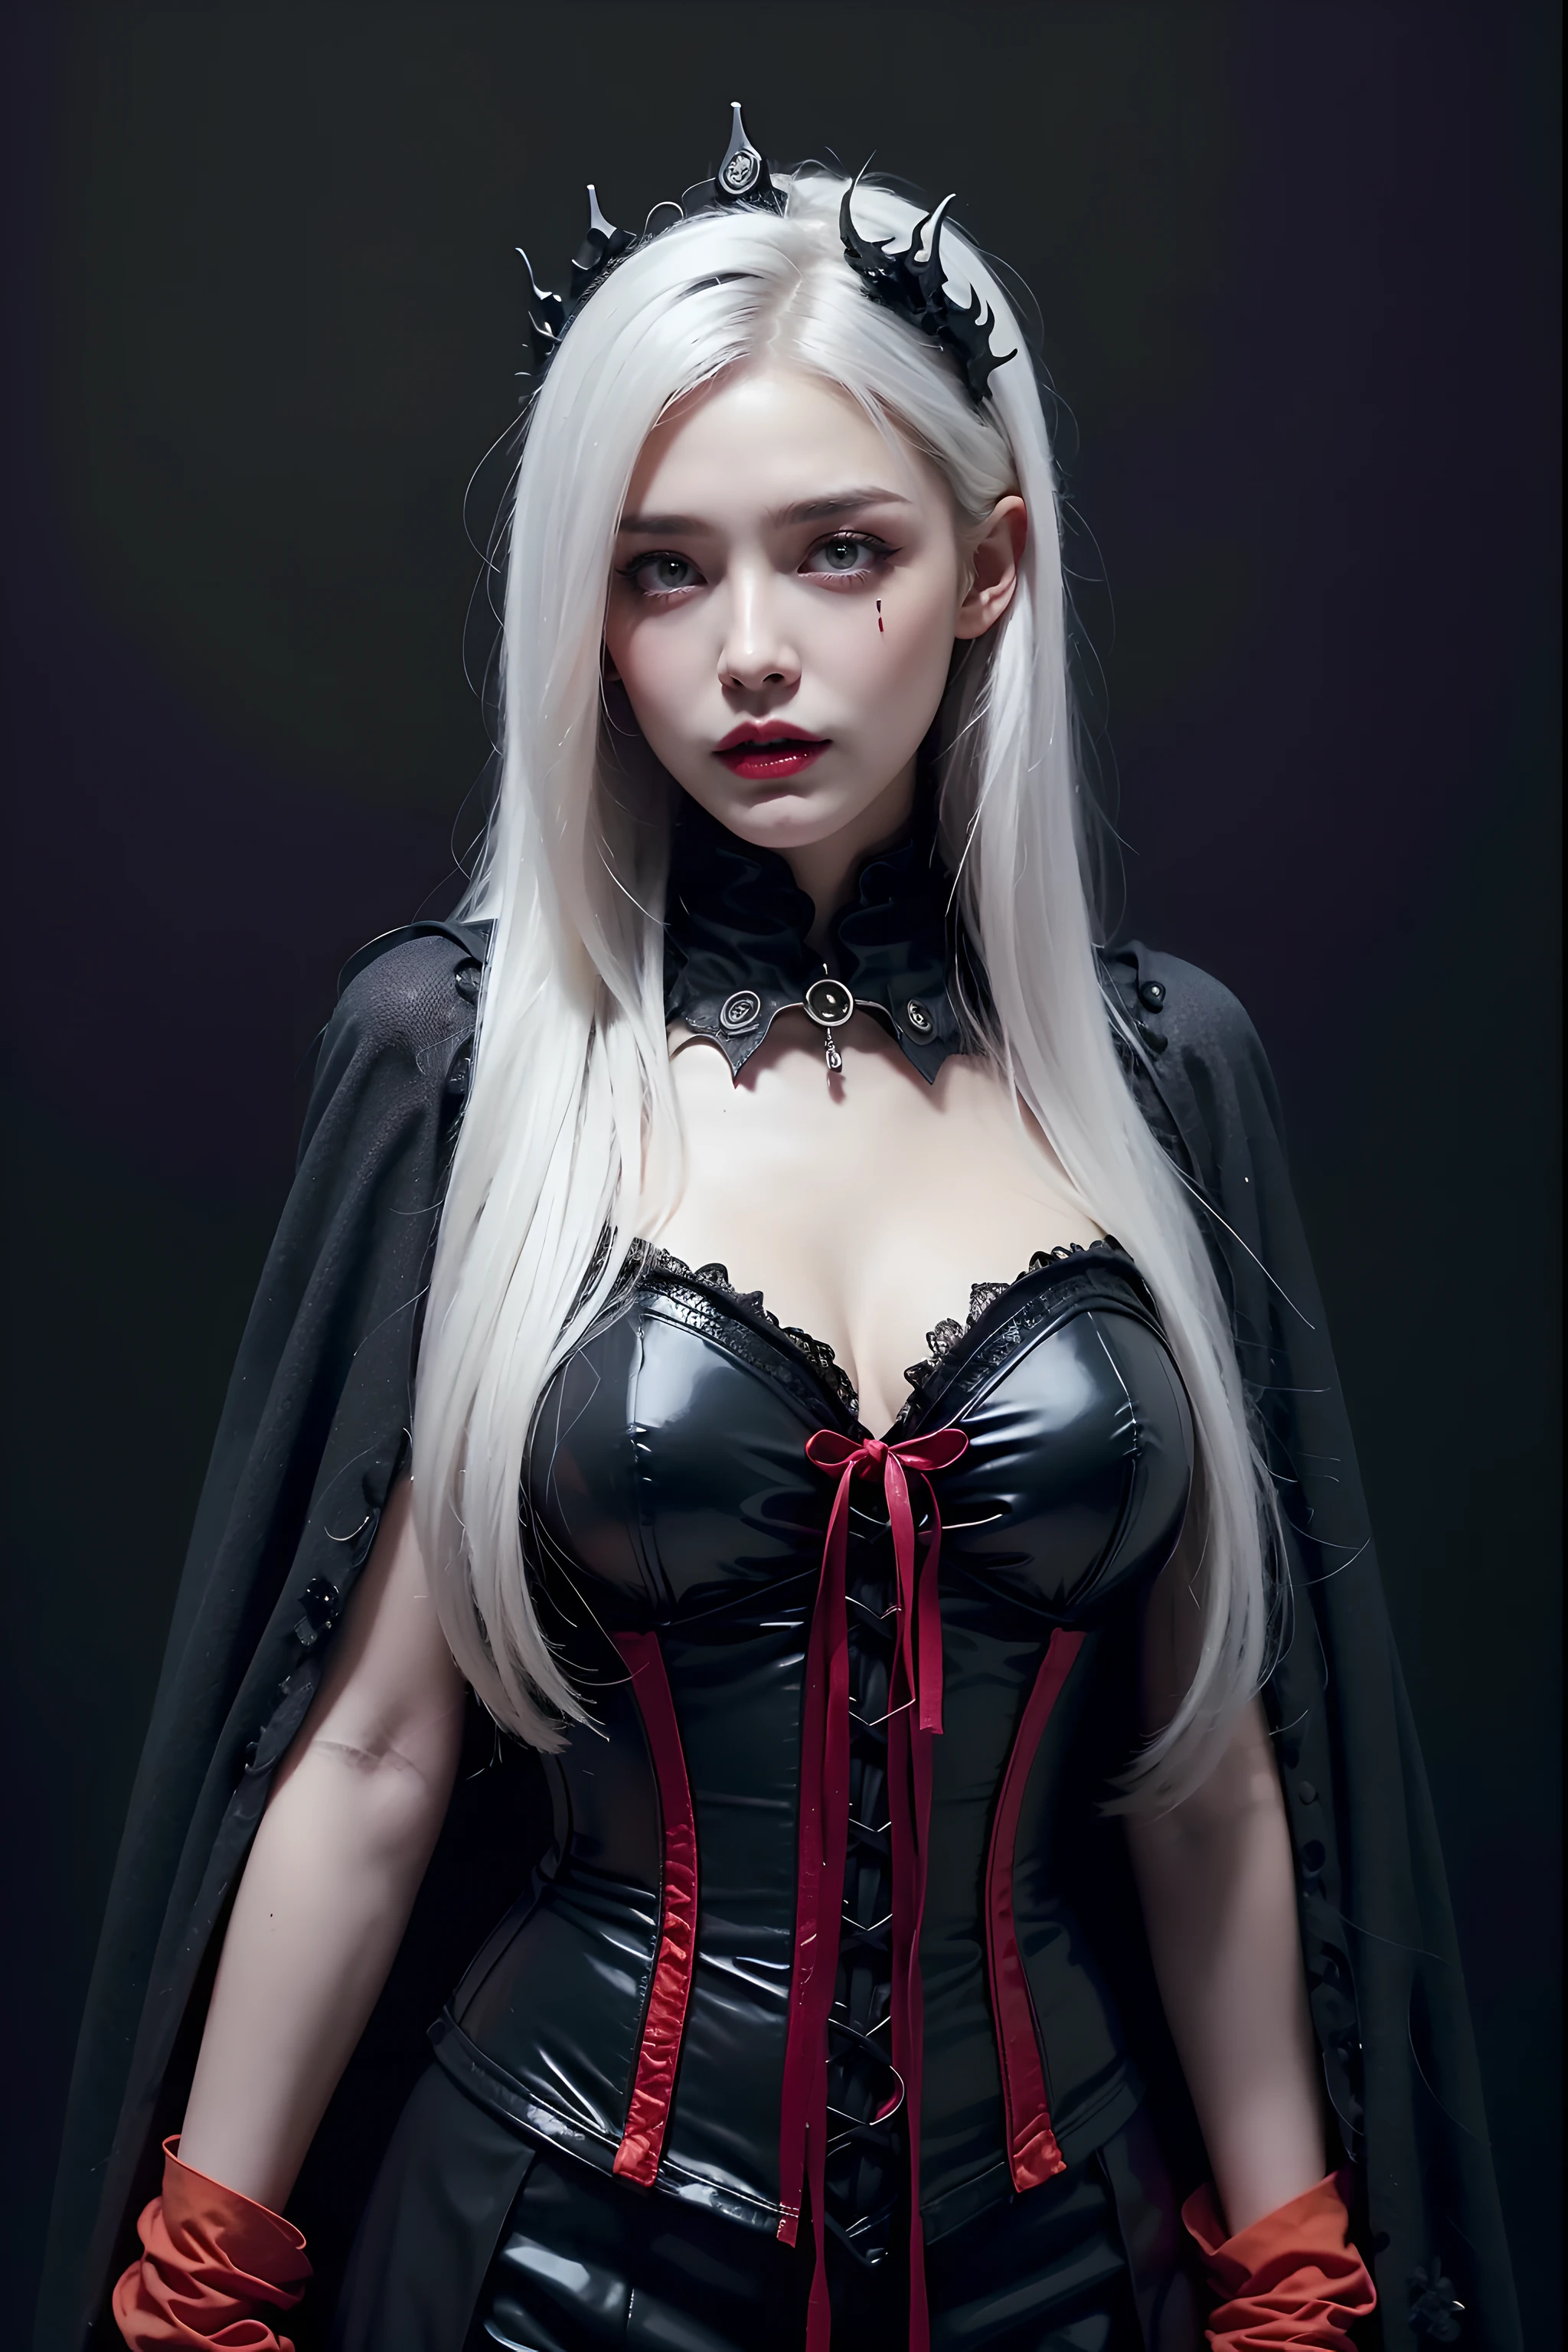 (tema do dia das bruxas:1.3), (fantasia:1.3), (rainha vampira:1.3), (cabelos longos prateados:1.3), (olhos vermelhos:1.3), (presas de vampiro:1.3), (extremely pretty and lindo rainha vampira:1.3), QUEBRAR, bela ilustração, qualidade máxima, (cute Russian rainha vampira:1.3, caucasiano:1.3), tendo características de vampiro, (rainha vampira:1.5), QUEBRAR, (olhos vermelhos:1.5, pele pálida:1.1), (lindo, 20 anos de idade:1.5), magro, Delgado, (seios grandes e caídos), (rosto limpo:1.3), (presas de vampiro:1.3), (Cabelo cinza:1.3), (cabelo branco:1.3), (Cabelo prateado:1.3), QUEBRAR, (fusão de vestido de capa medieval vermelho e vestido gótico preto elegante e rendado), (espartilho de látex), (meias pretas de látex), (botas até o joelho, infernos), (roupas incrivelmente detalhadas), (dia das Bruxas costume), QUEBRAR, ((braços para baixo:1.5)), olhos azuis, lindas coxas, (Jack o&#39;lantern:1.3), (olhando diretamente para o espectador), (Ver visualizador:1.3), (tronco:1.3), ângulo superior, fundo preto simples, (((fundo escuro:1.5))), (dia das Bruxas:1.5), (dia das Bruxas background:1.5), (iluminação discreta, (ambiente temperamental):1.2, sombras escuras, destaques sutis, aura misteriosa),